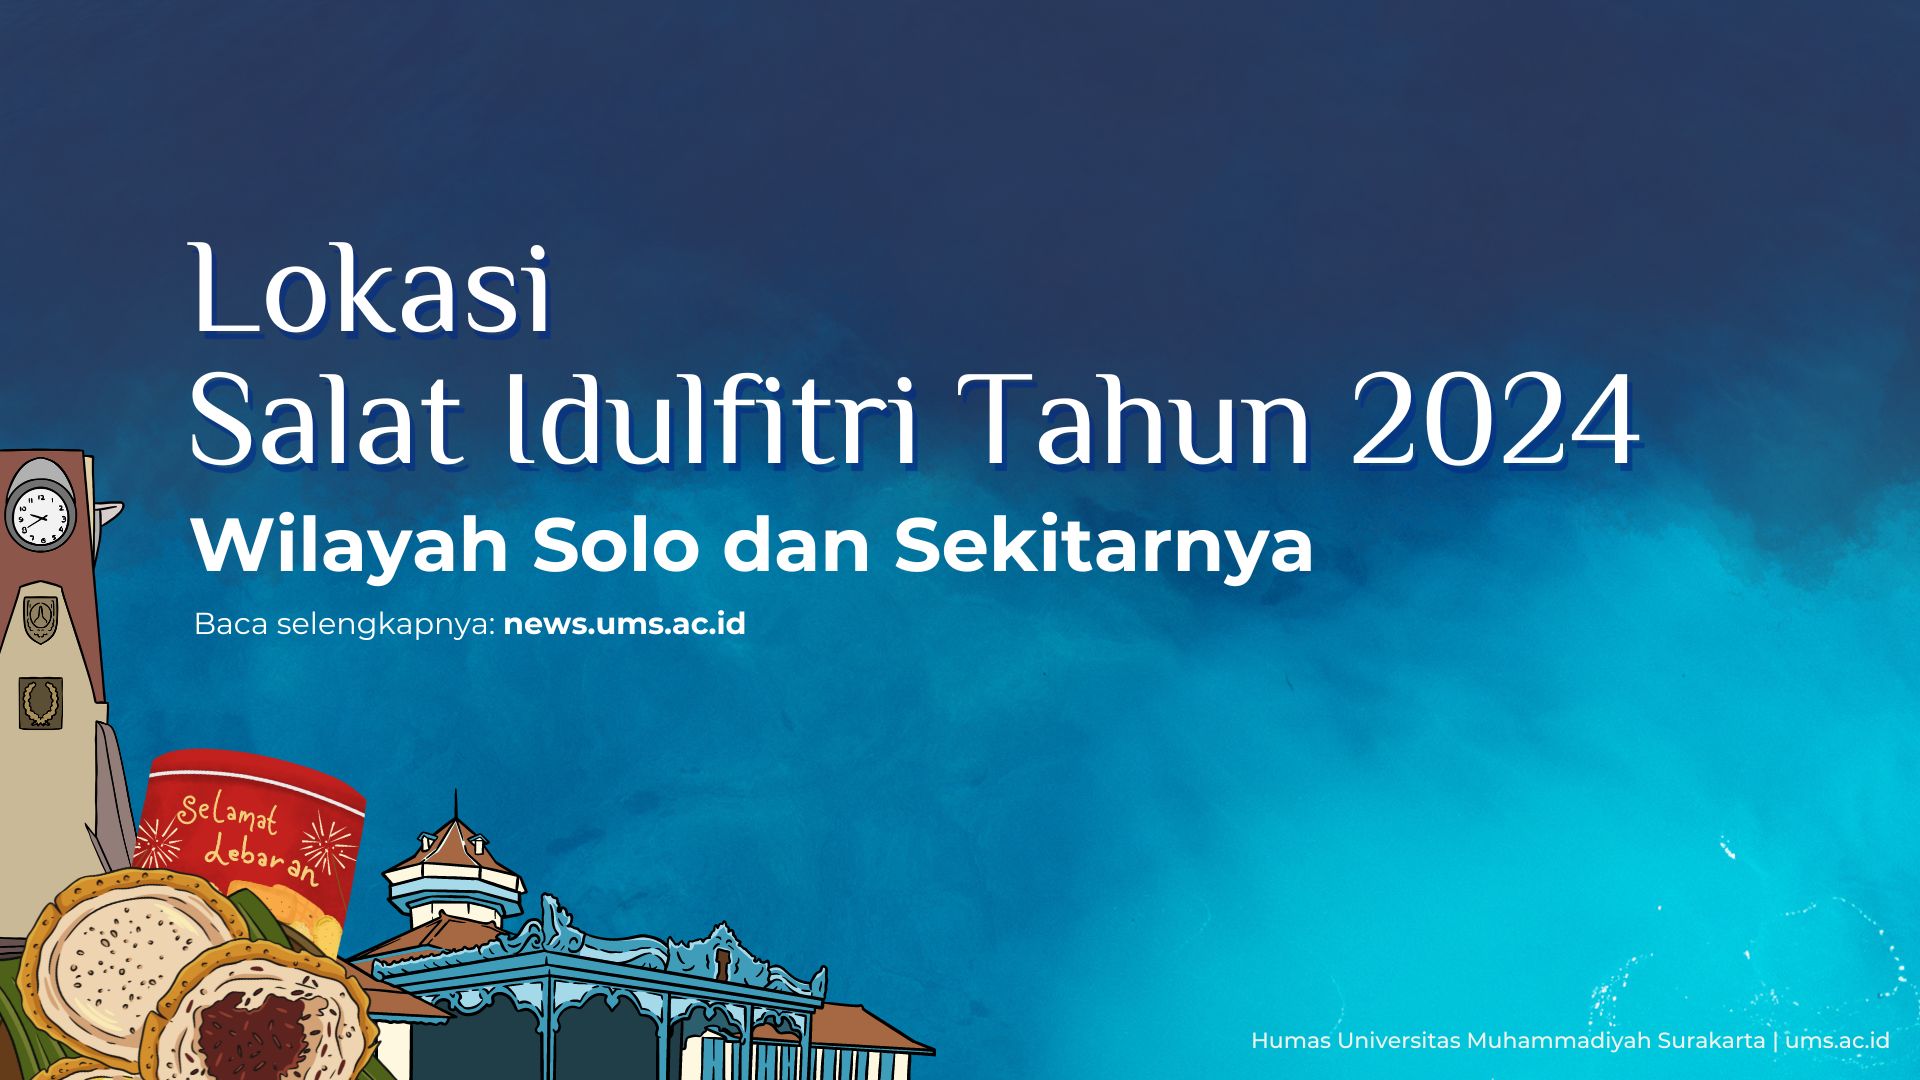 Read more about the article Lokasi Salat Idulfitri Tahun 2024 Wilayah Solo dan Sekitarnya